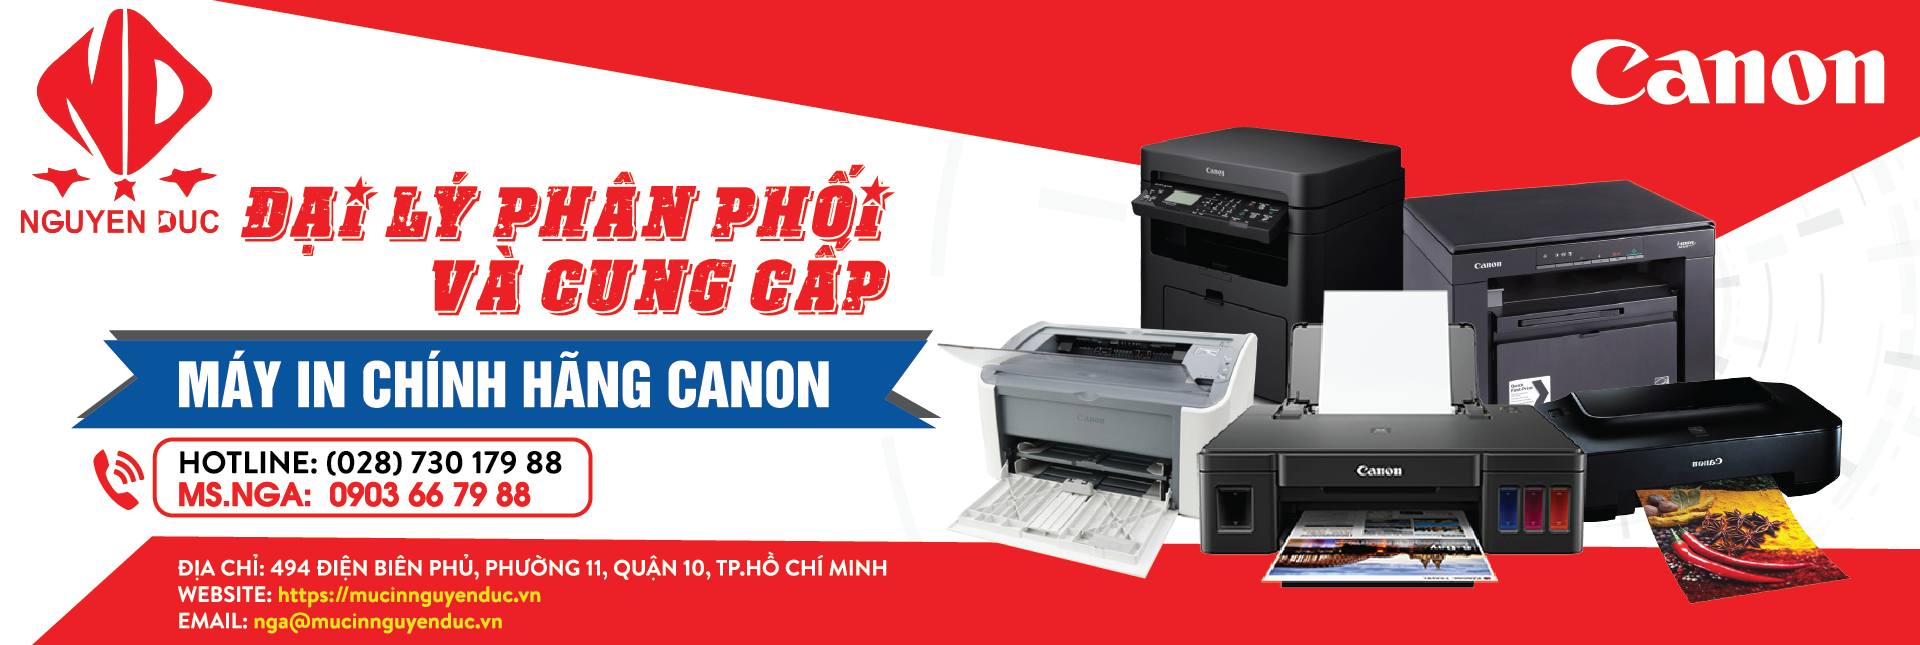 Đại lý phân phối máy in Canon Pixma G6070 chính hãng, giao hàng và lắp đặt tại khu vực Quận 4, Thành Phố Hồ Chí Minh